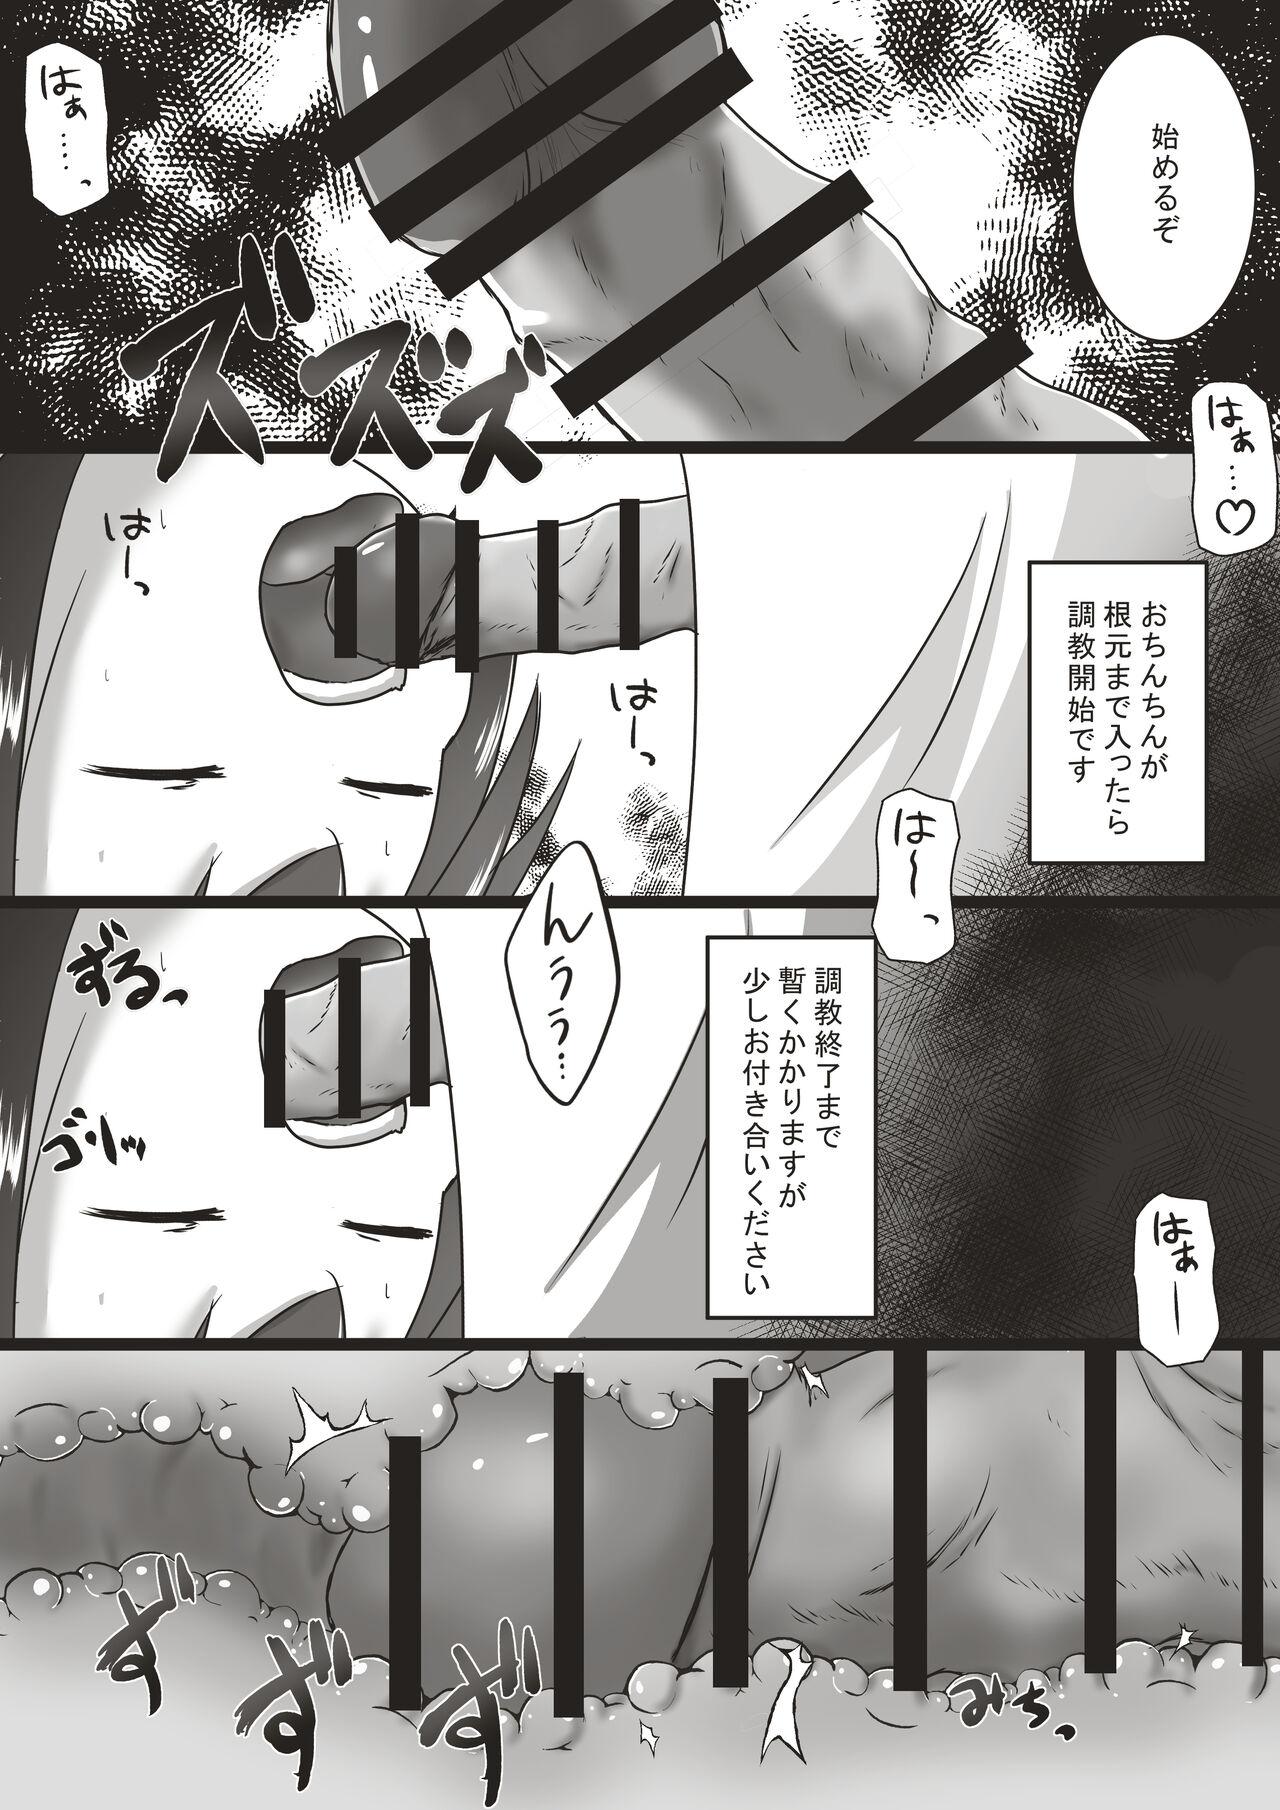 Cosplay Kōhaku-sōna ko o nodo oku shasei sen'yō no kuchi benki ni chōkyō suru ohanashi - Original Bang Bros - Page 11